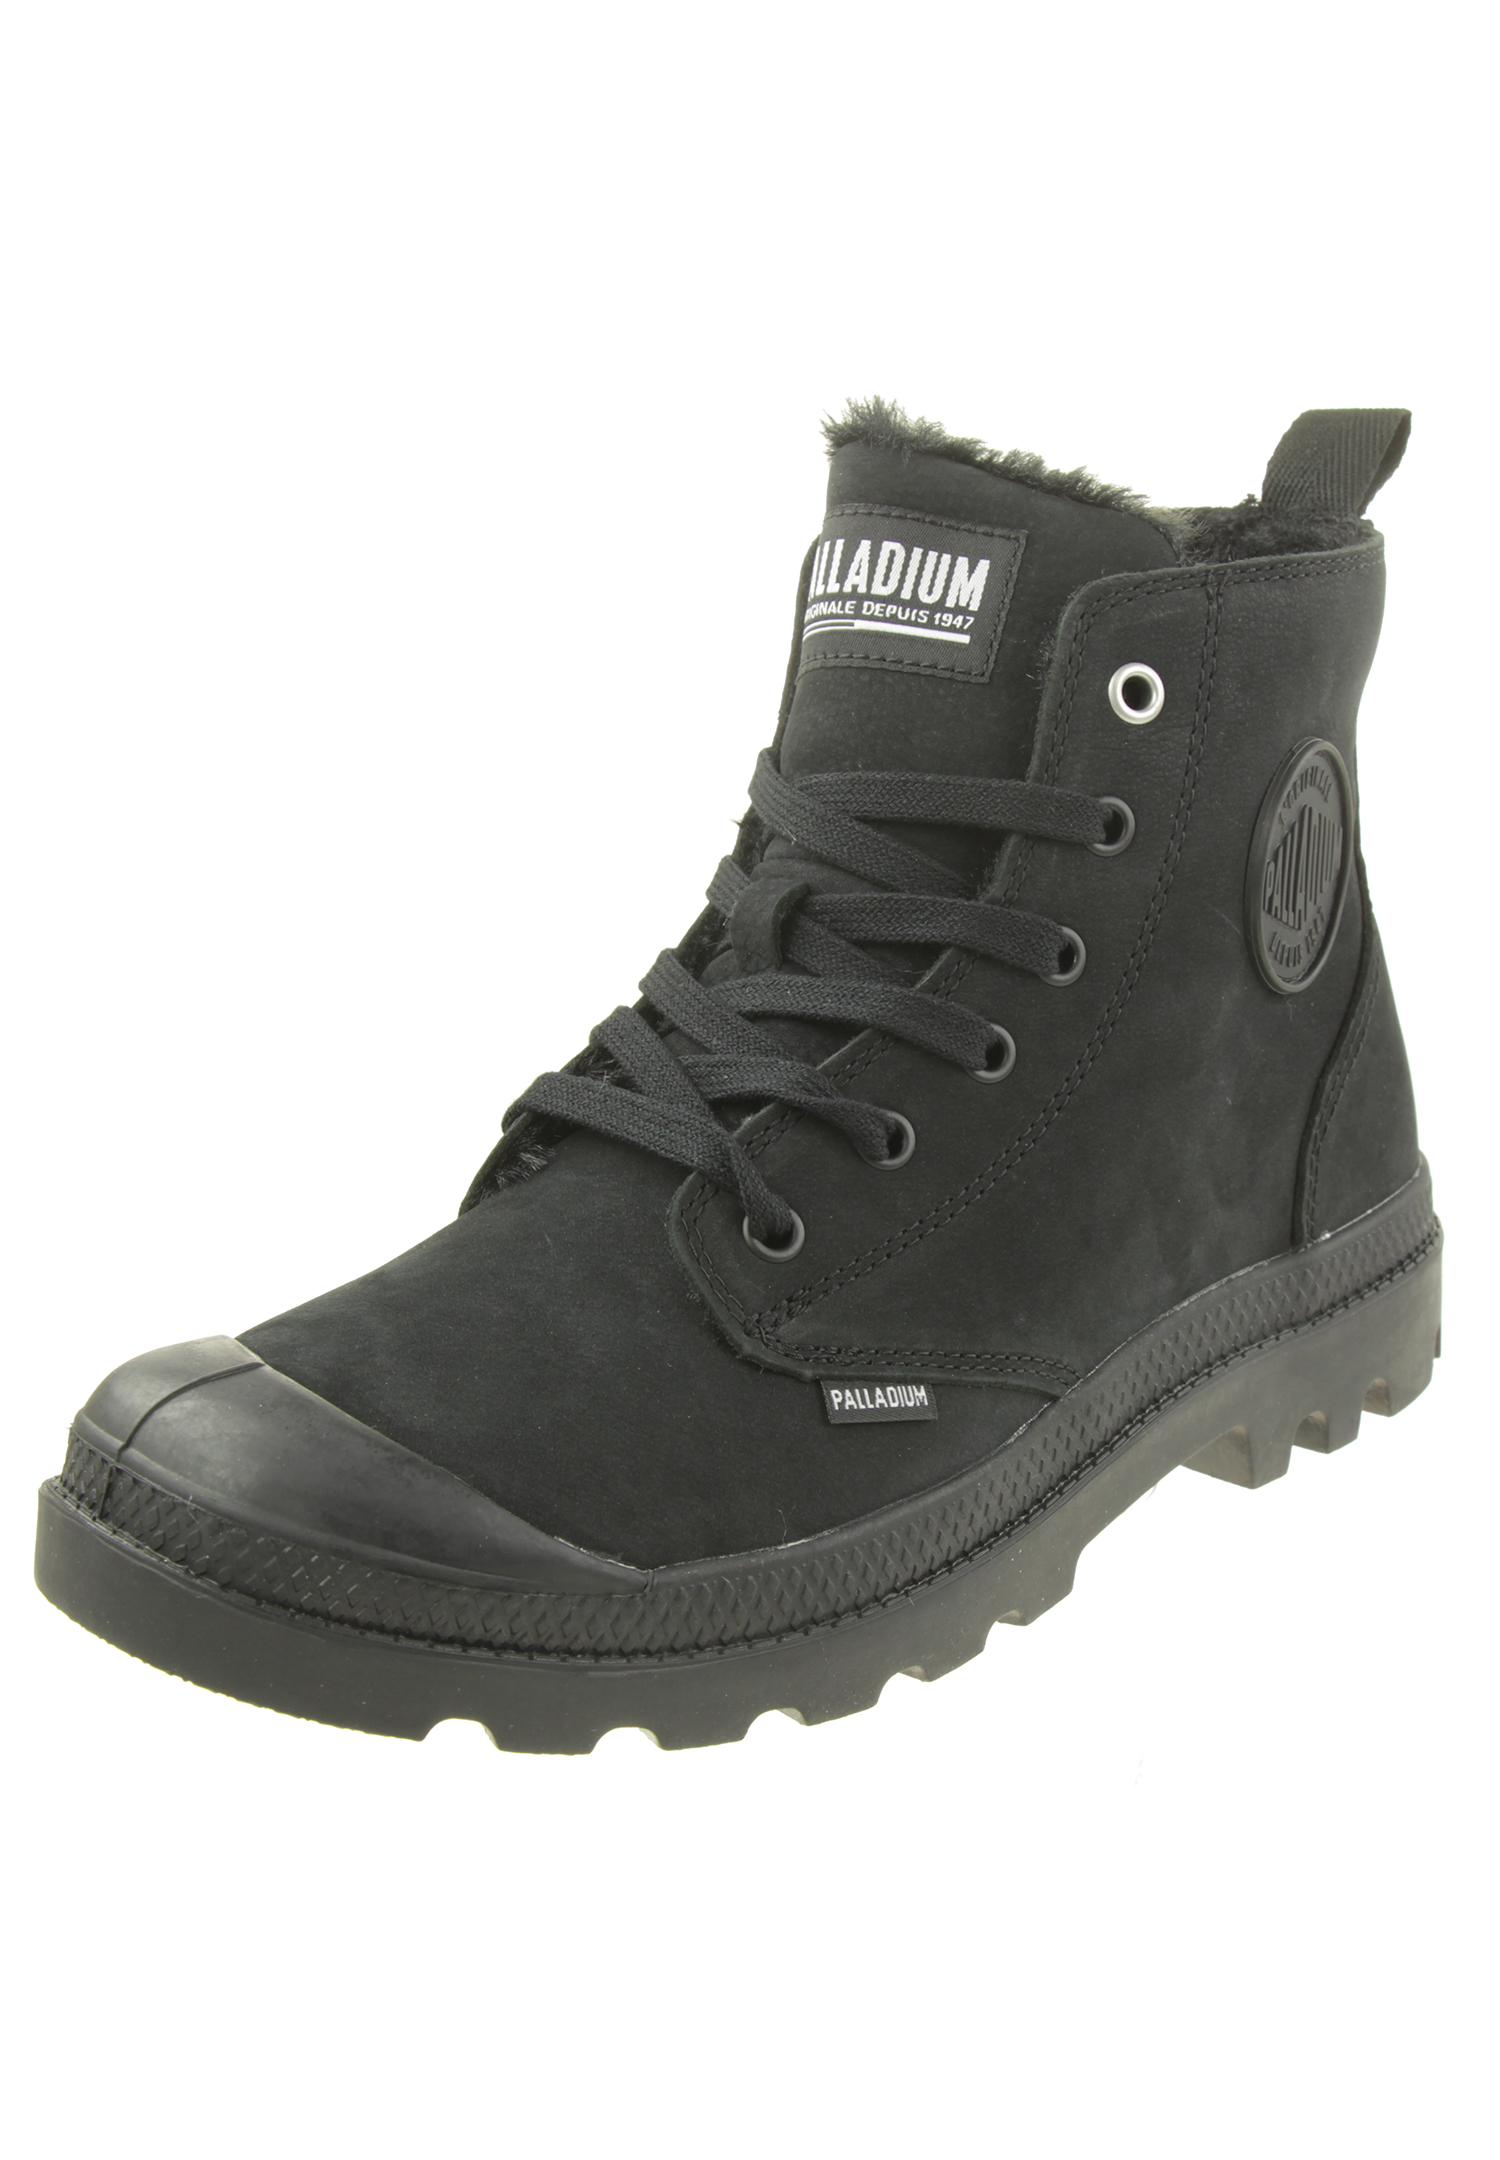 Palladium Herren Pampa Hi Zip WL Winter Ankle Boots Stiefelette 05982 Schwarz, Schuhgröße:41 EU